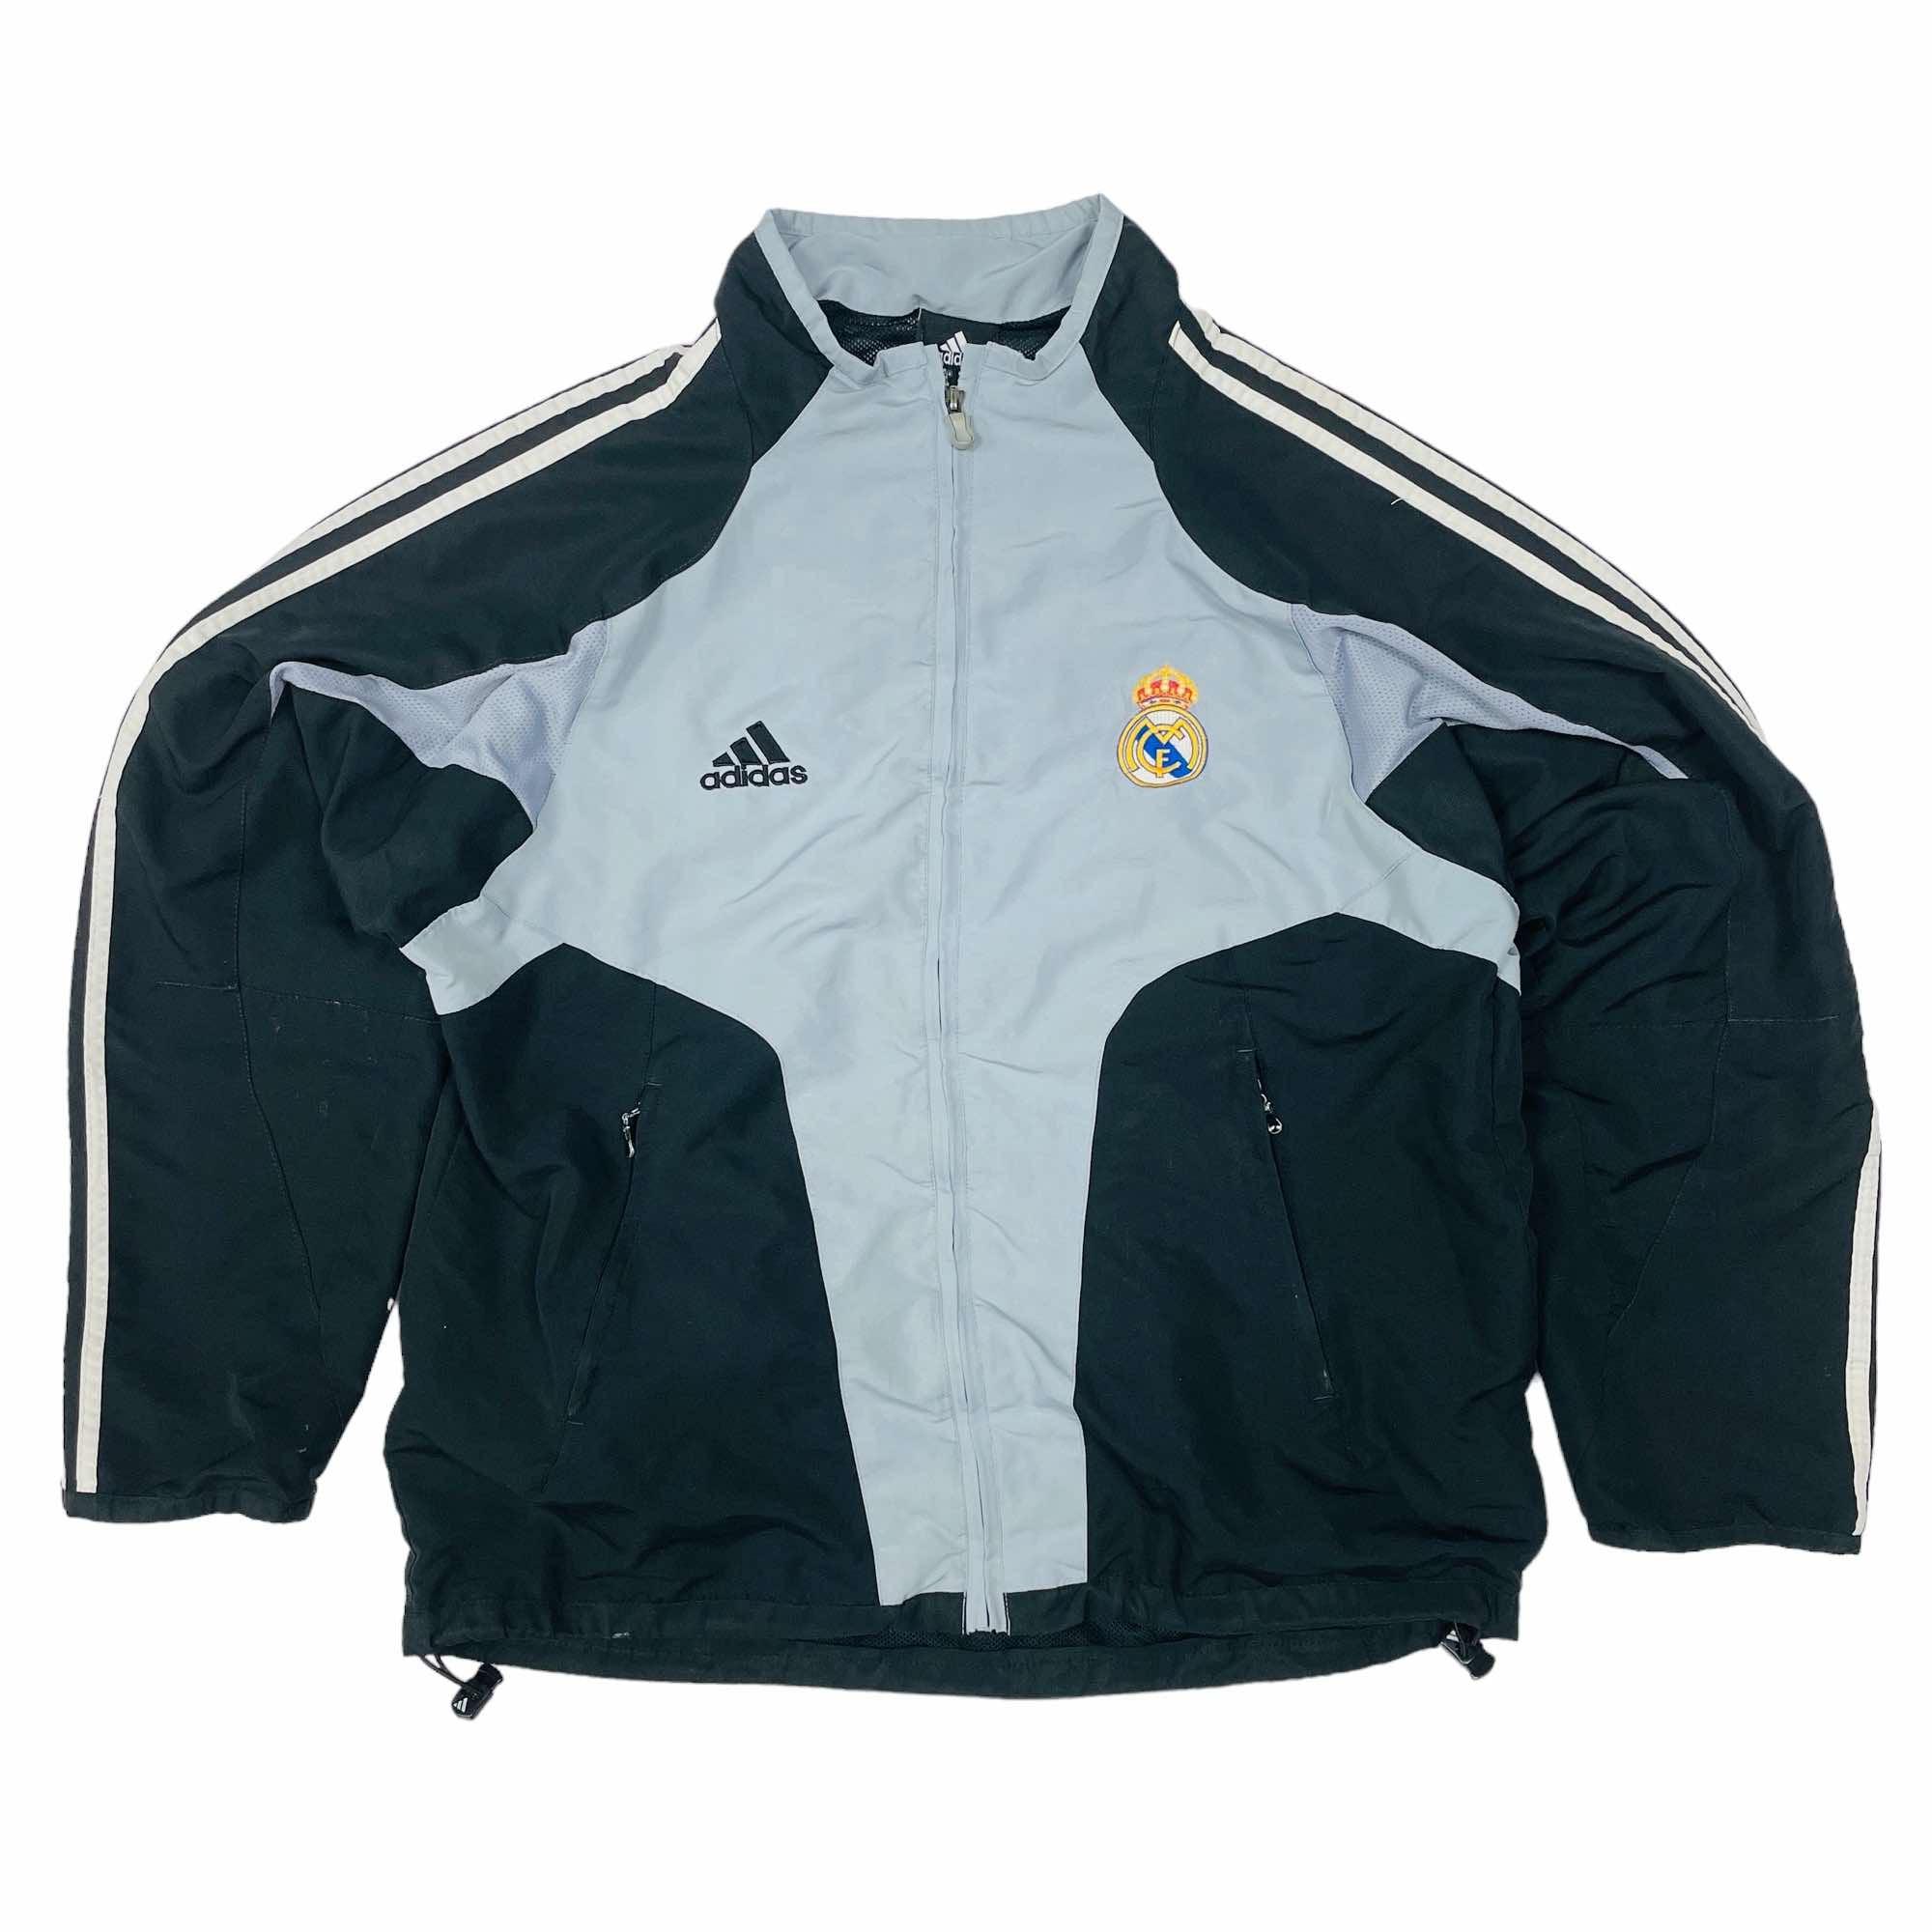 Real Madrid 2004/05 Adidas Training Jacket - Large